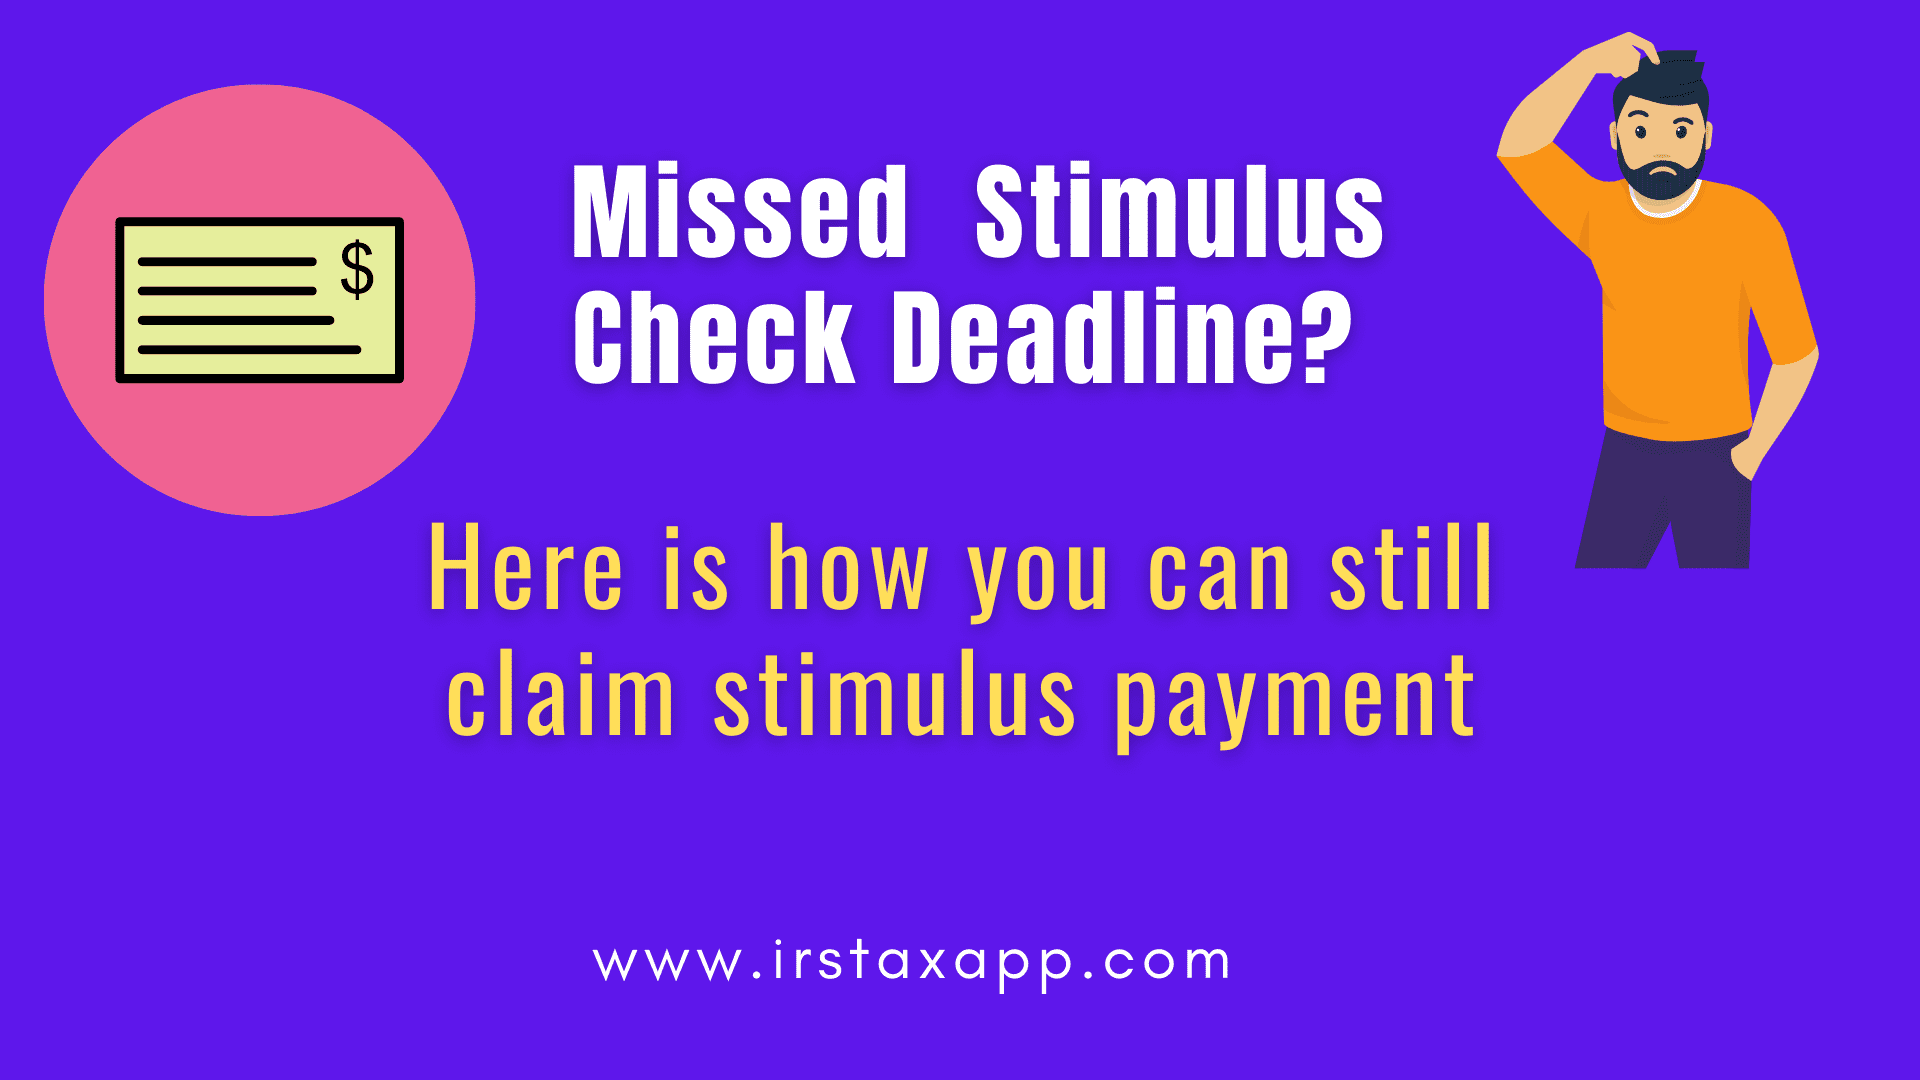 missed stimulus cjeck deadline